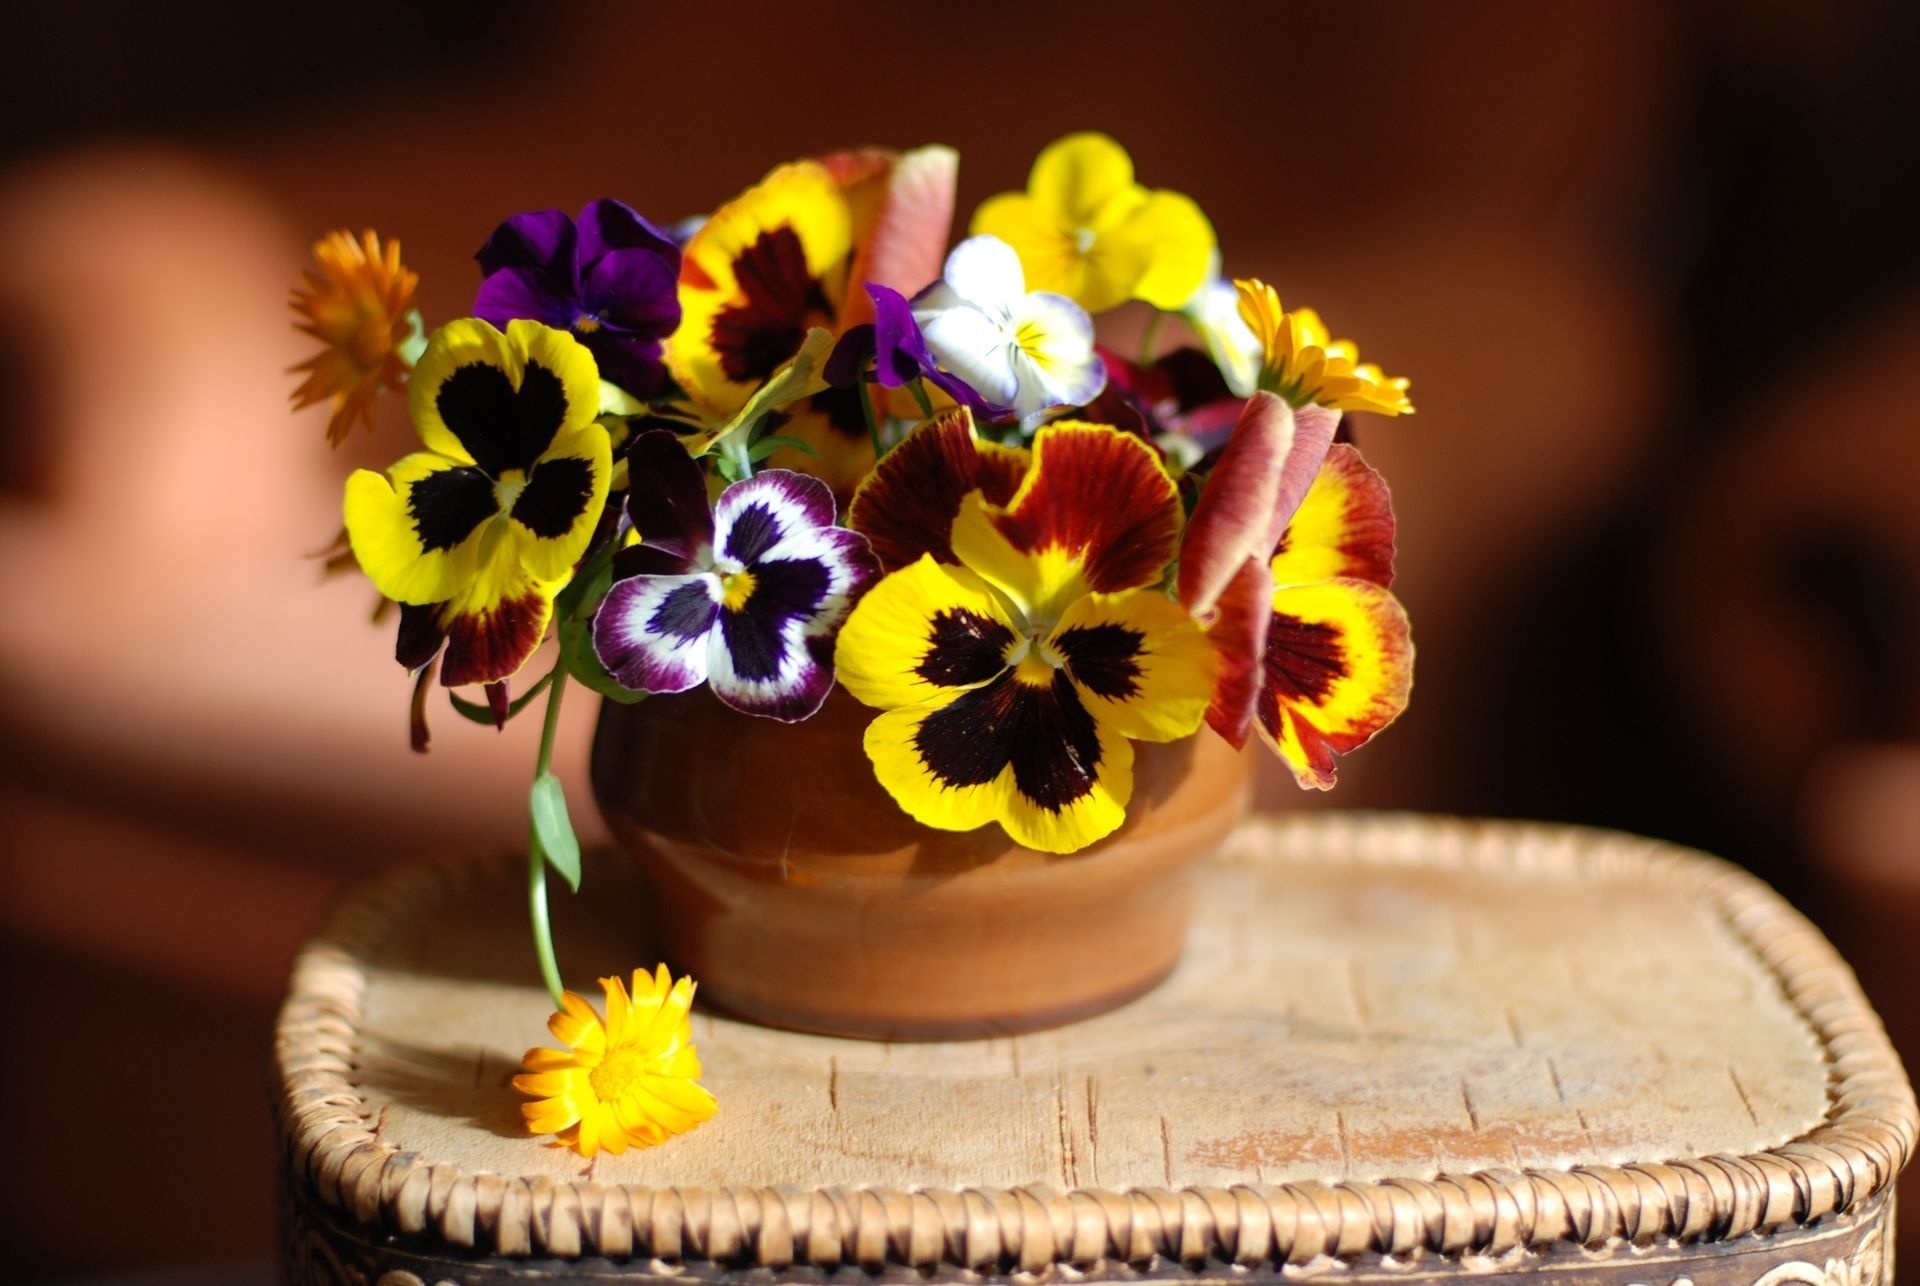 Скачать обои бесплатно Праздники, Растения, Букеты, Цветы картинка на рабочий стол ПК